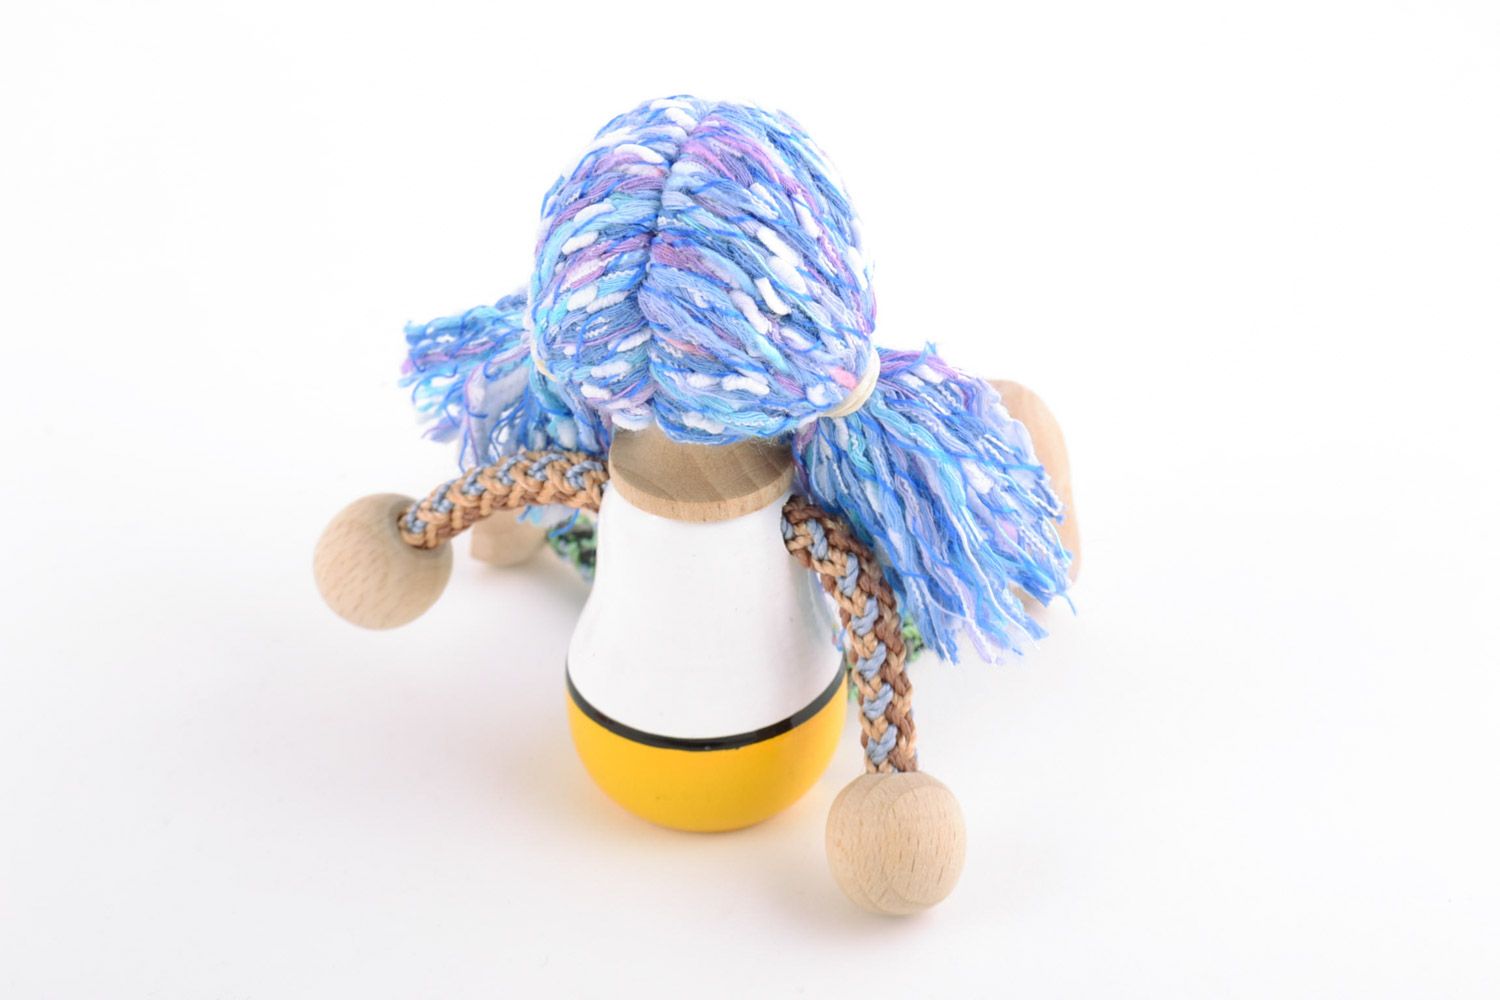 Öko Spielzeug aus Holz handmade umweltfreundlich künstlerisch Mädchen mit blauem Haar foto 5